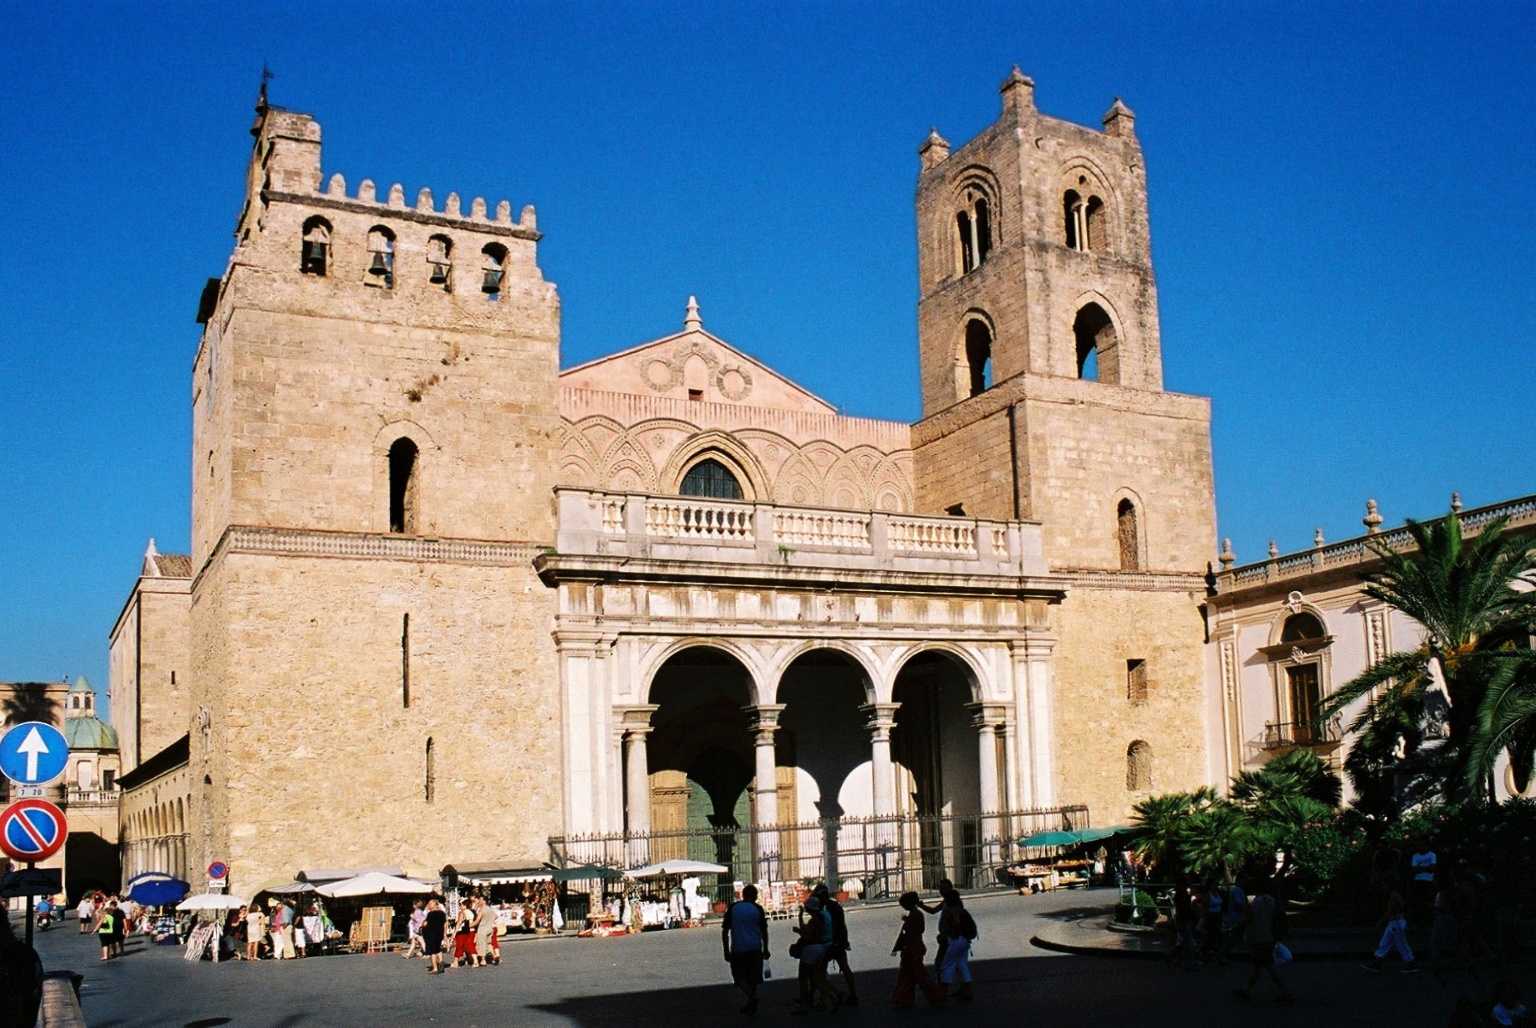 Il duomo di Monreale: una cattedrale patrimonio Unesco nota per i suoi mosaici e intarsi